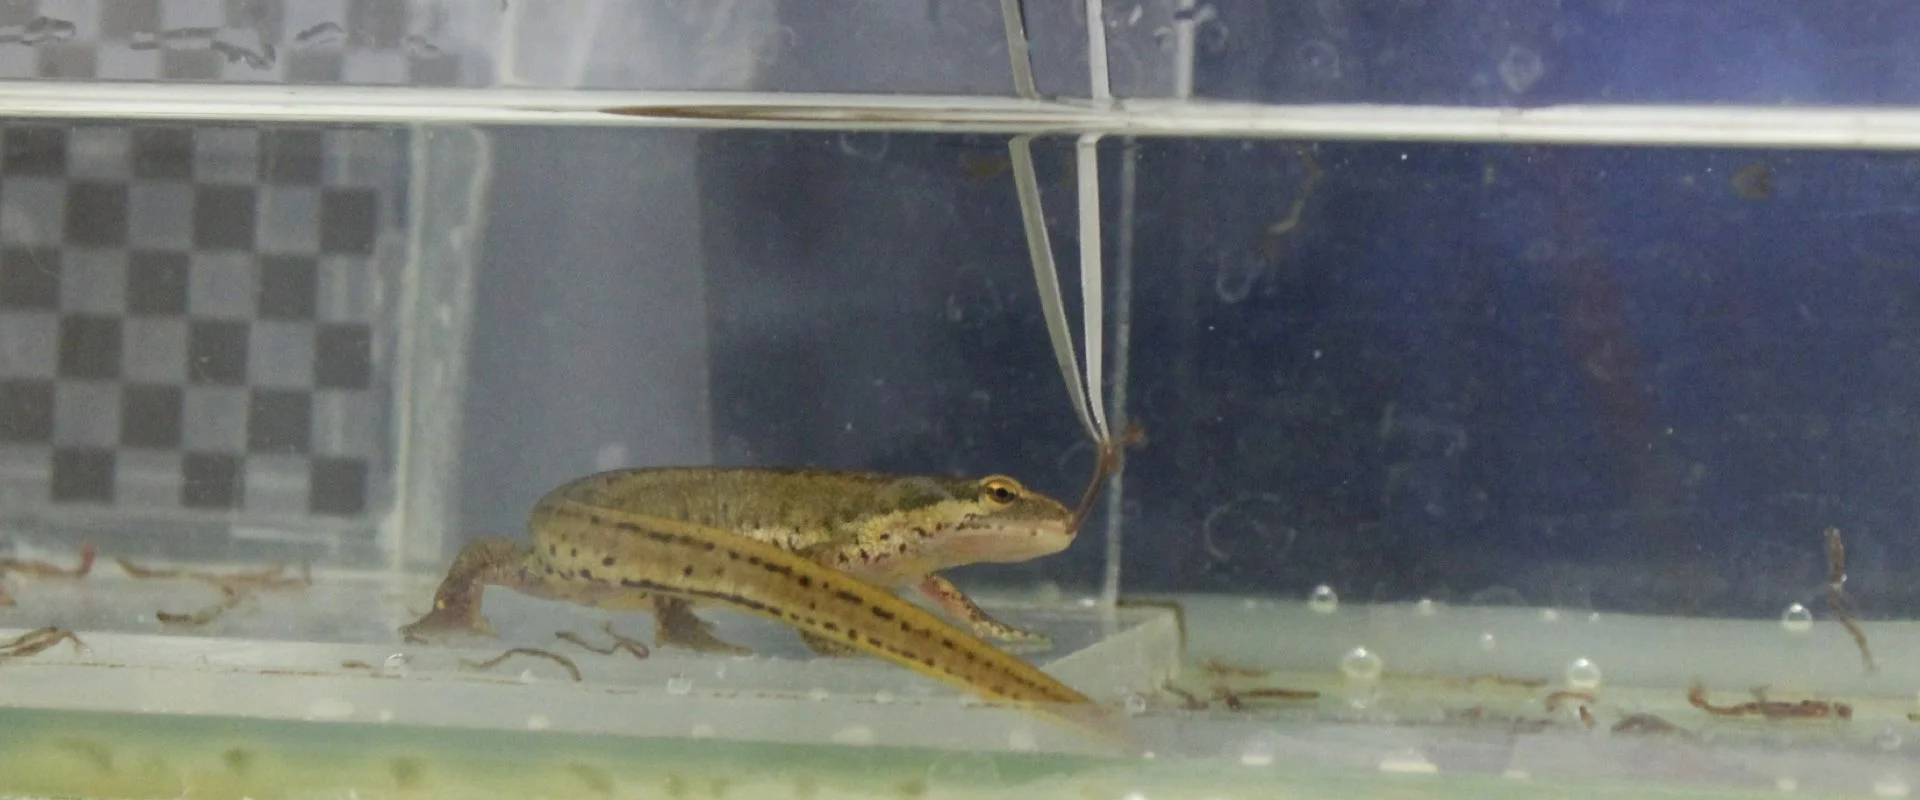 Une main avec une pince à épiler tenant de la nourriture devant une salamandre vivante sous l'eau